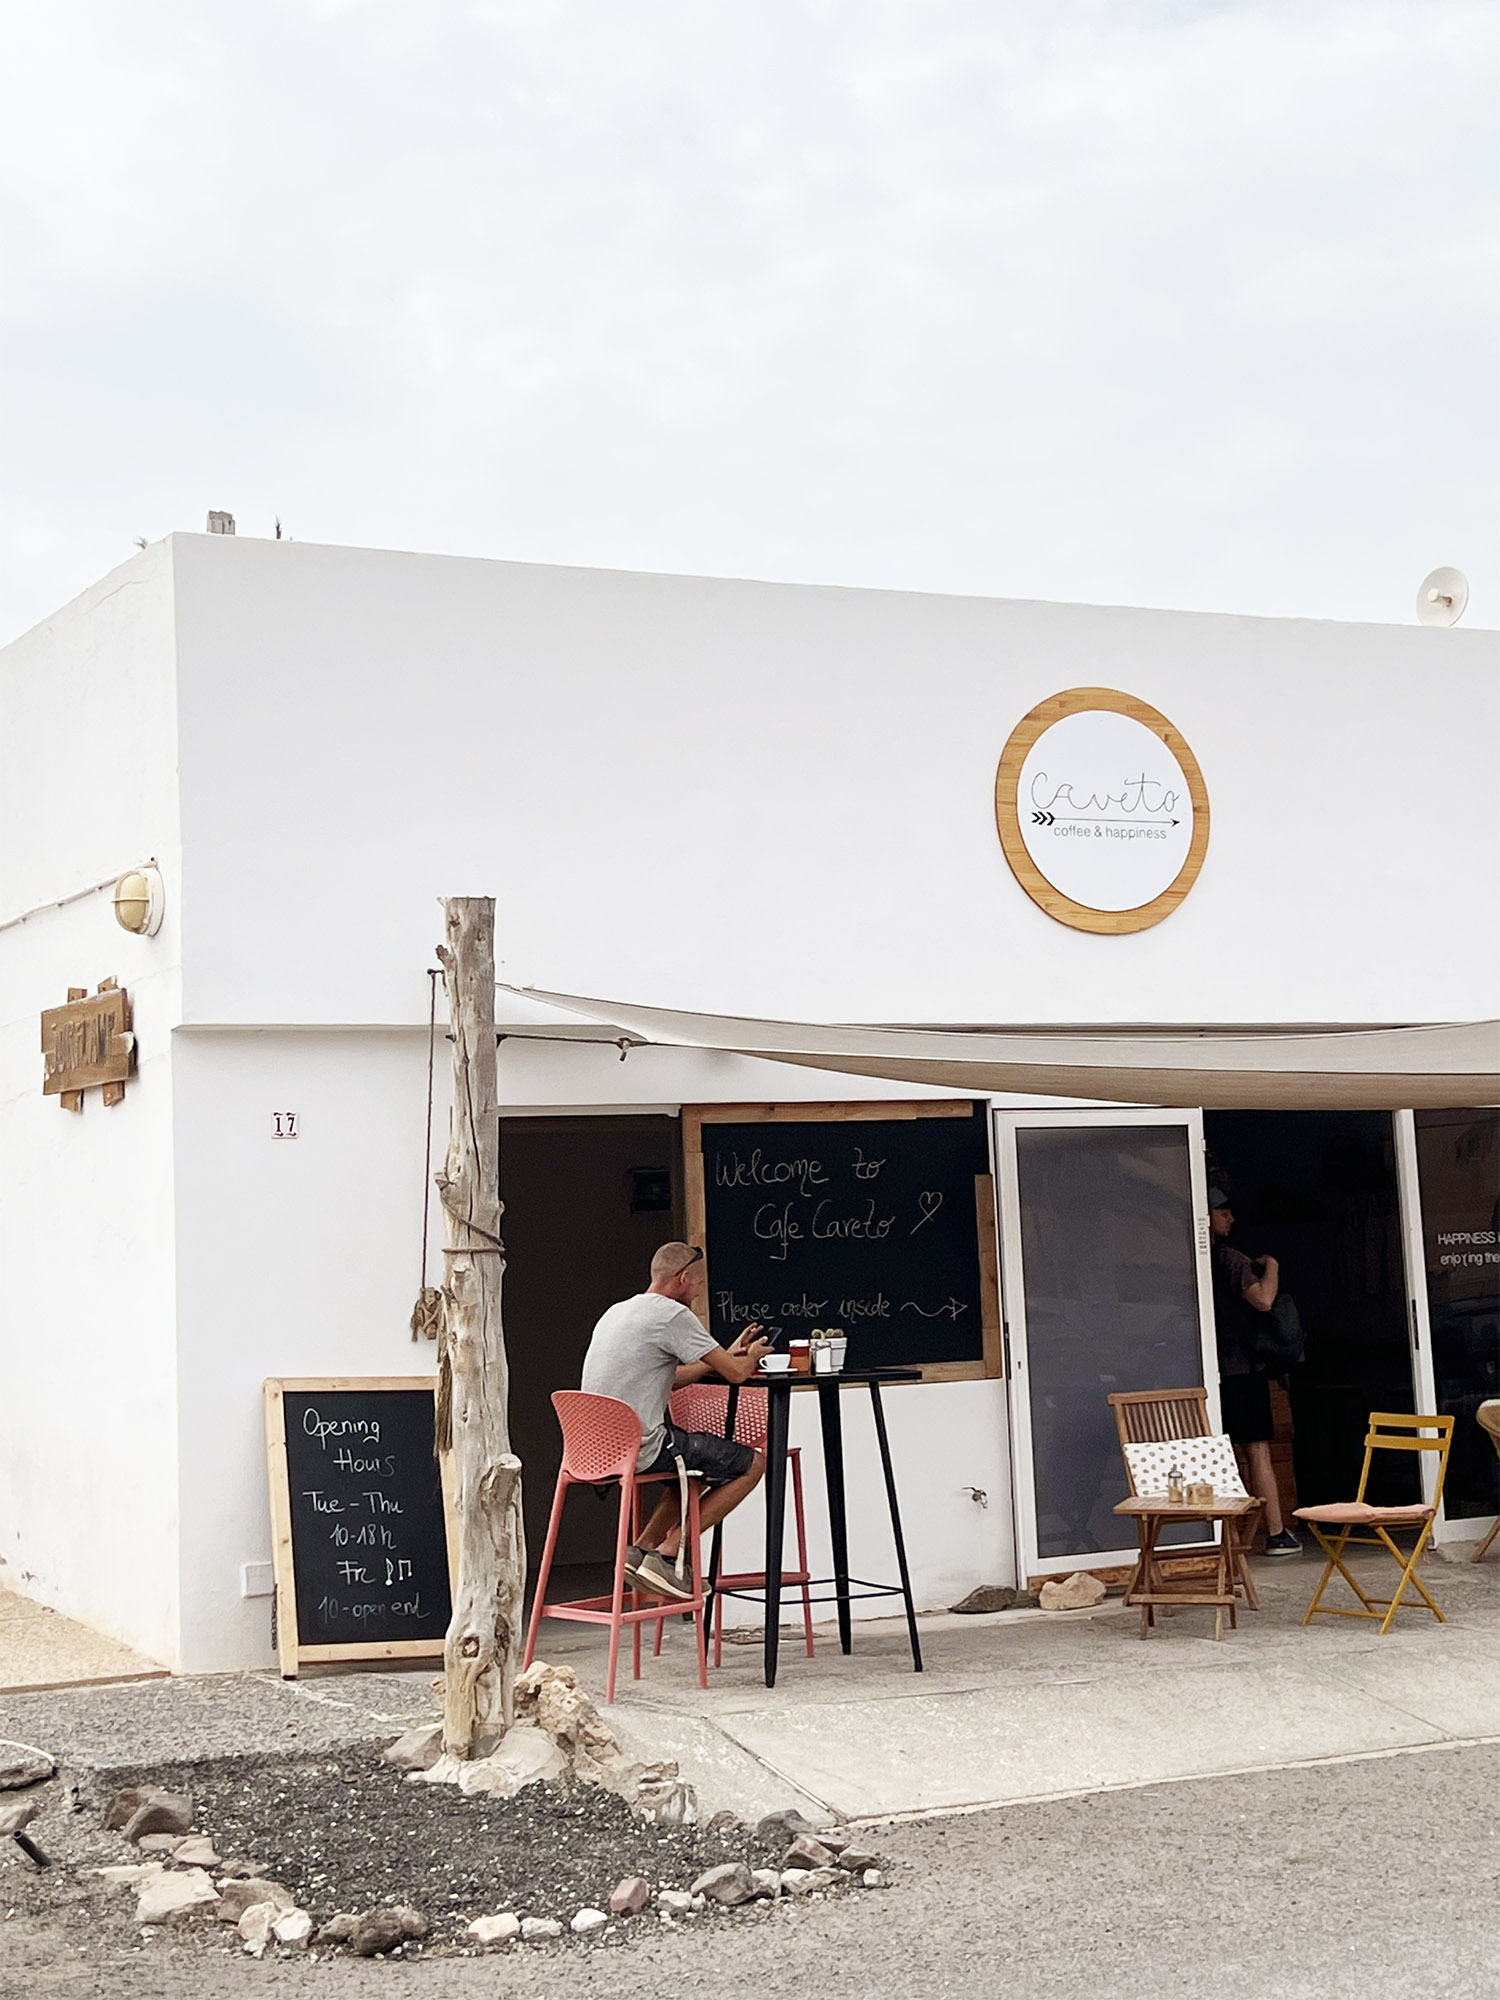 Fuerteventura: Café Caveto - Ett mysigt kafé i La Pared